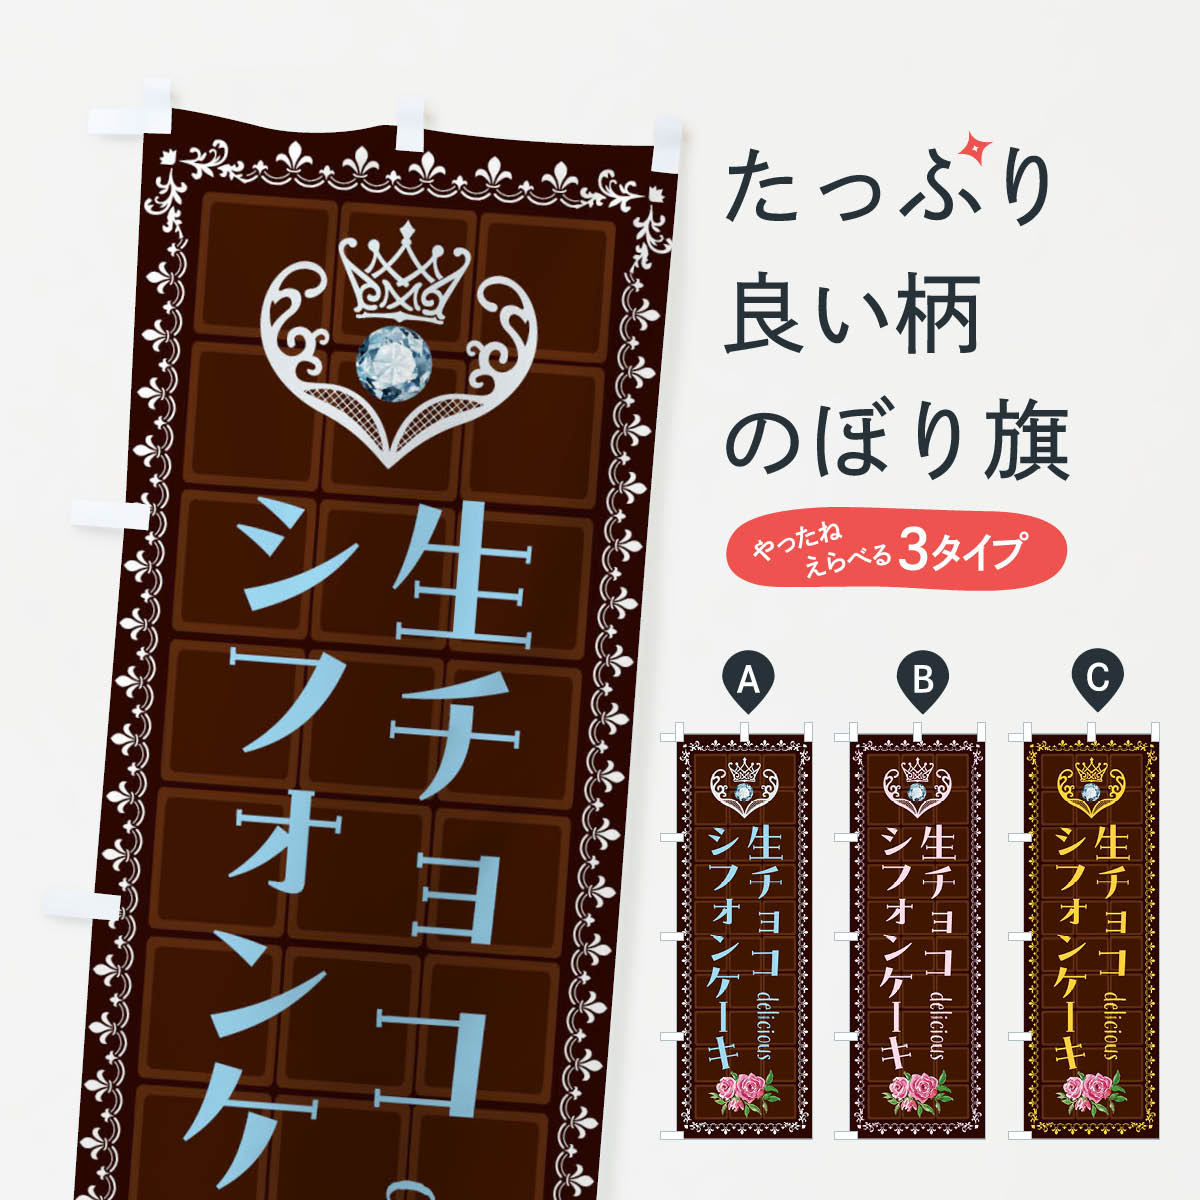  のぼり旗 生チョコシフォンケーキ・洋菓子のぼり 42R3 グッズプロ